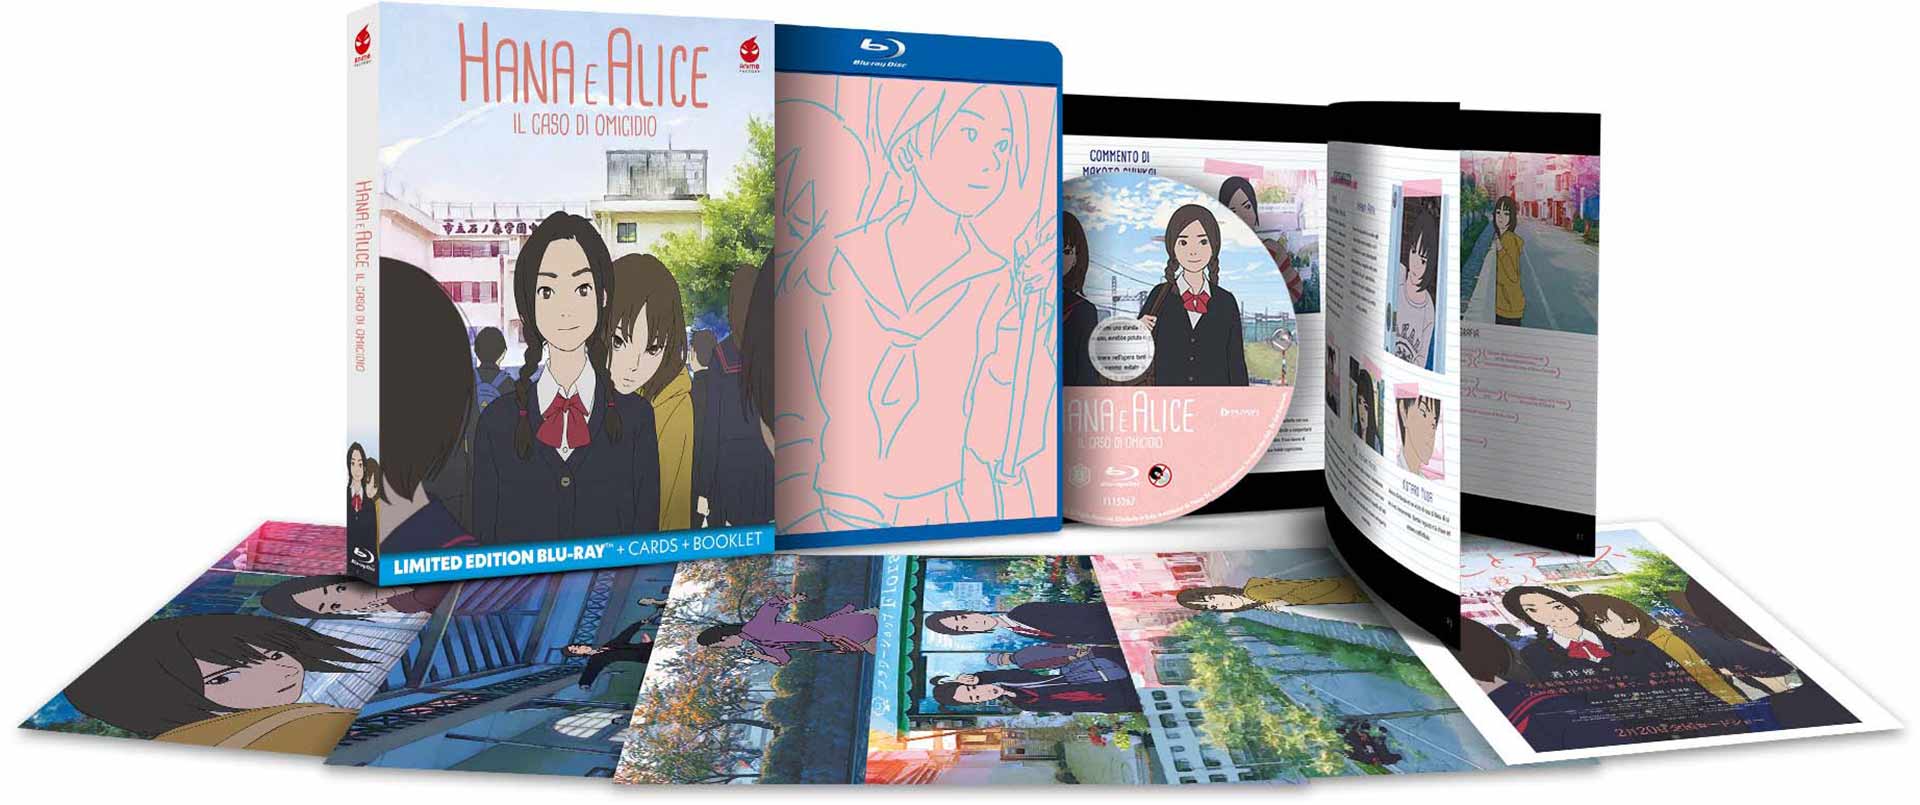 Hana e Alice - Il caso di omicidio - Limited Edition Blu-ray + Cards + Booklet (Blu-ray) Image 7